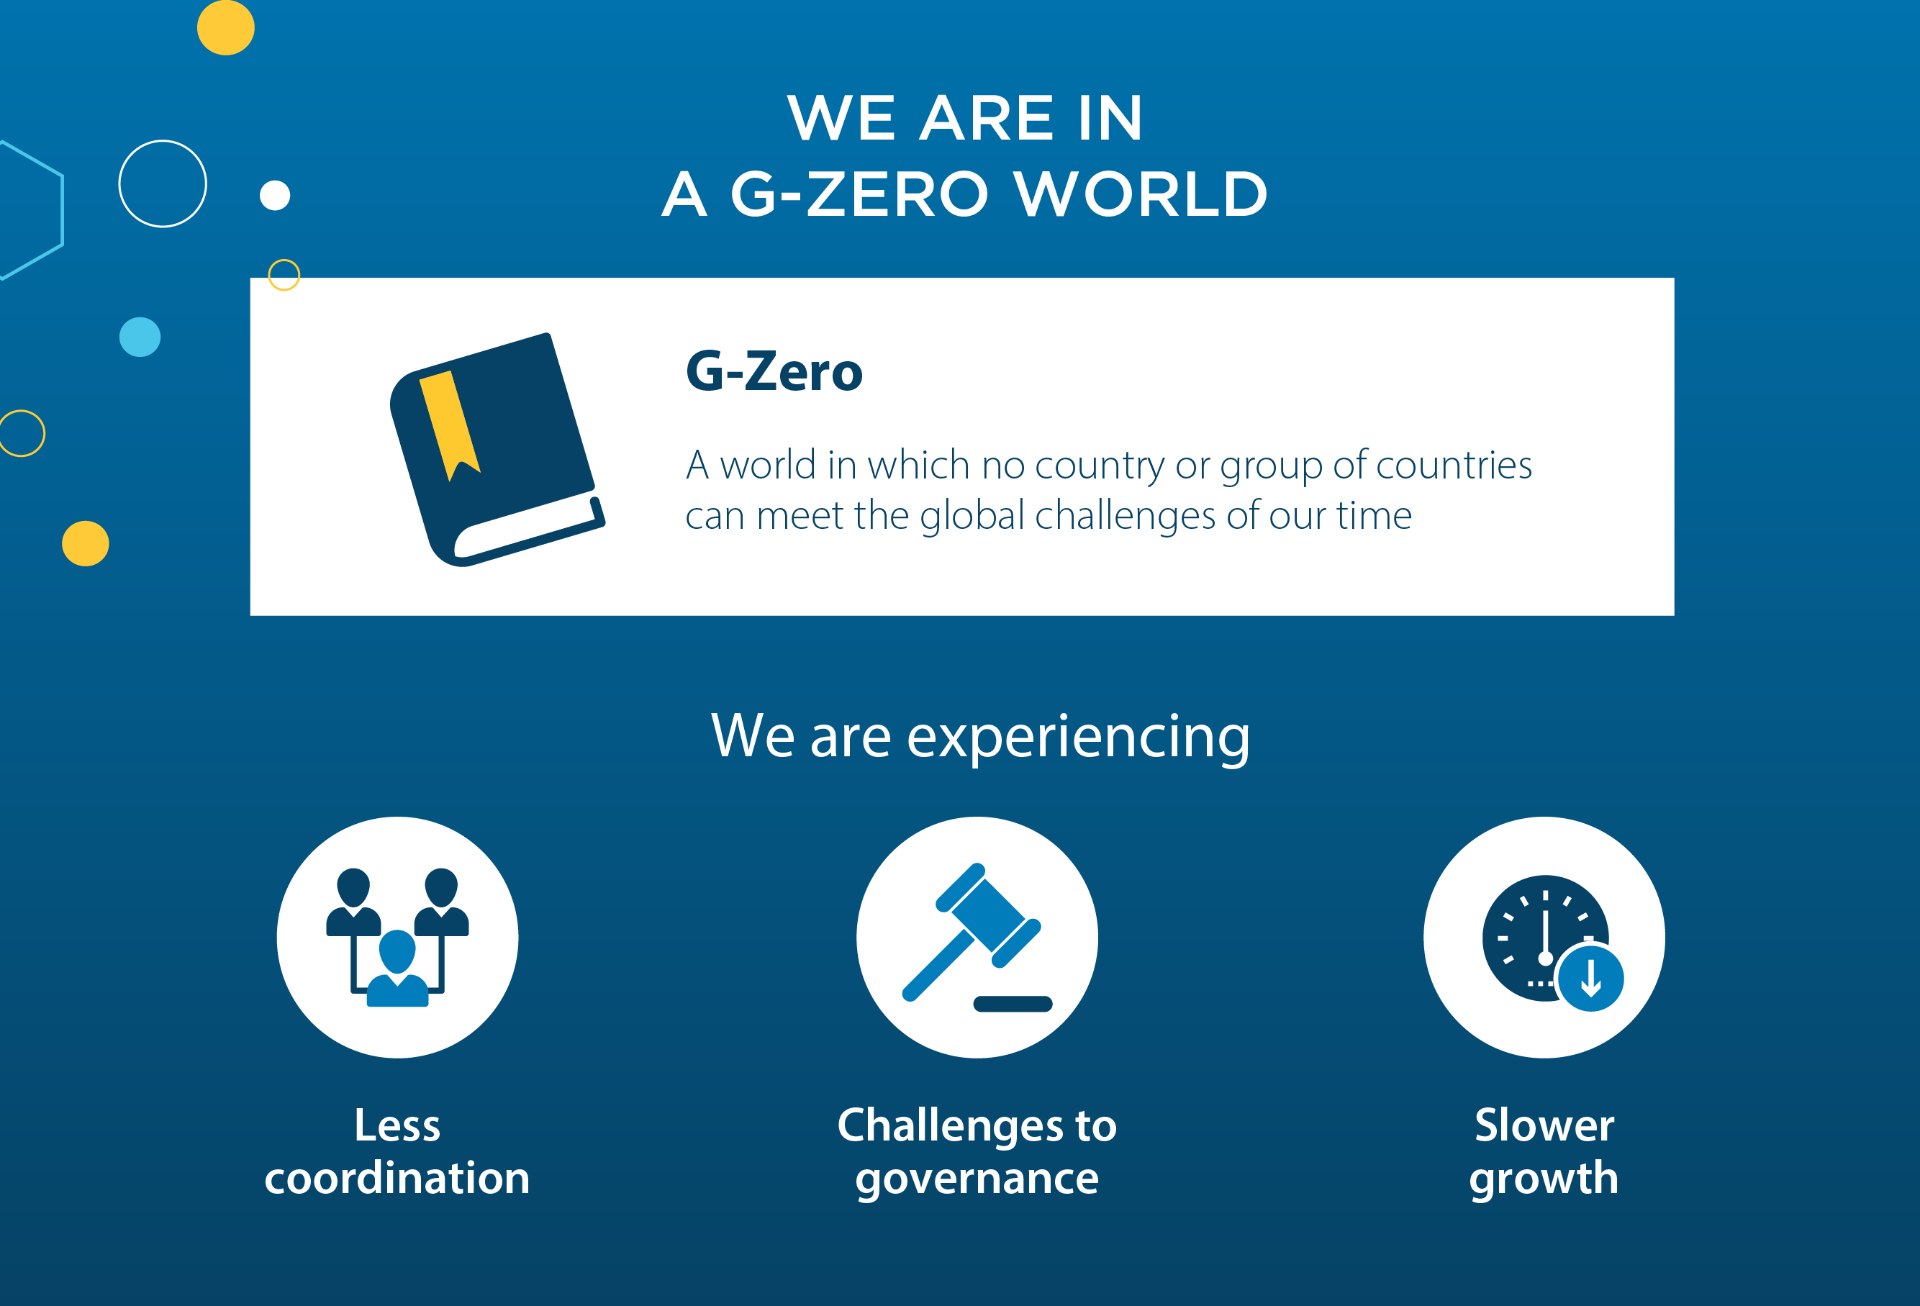 We are in a G-Zero world.